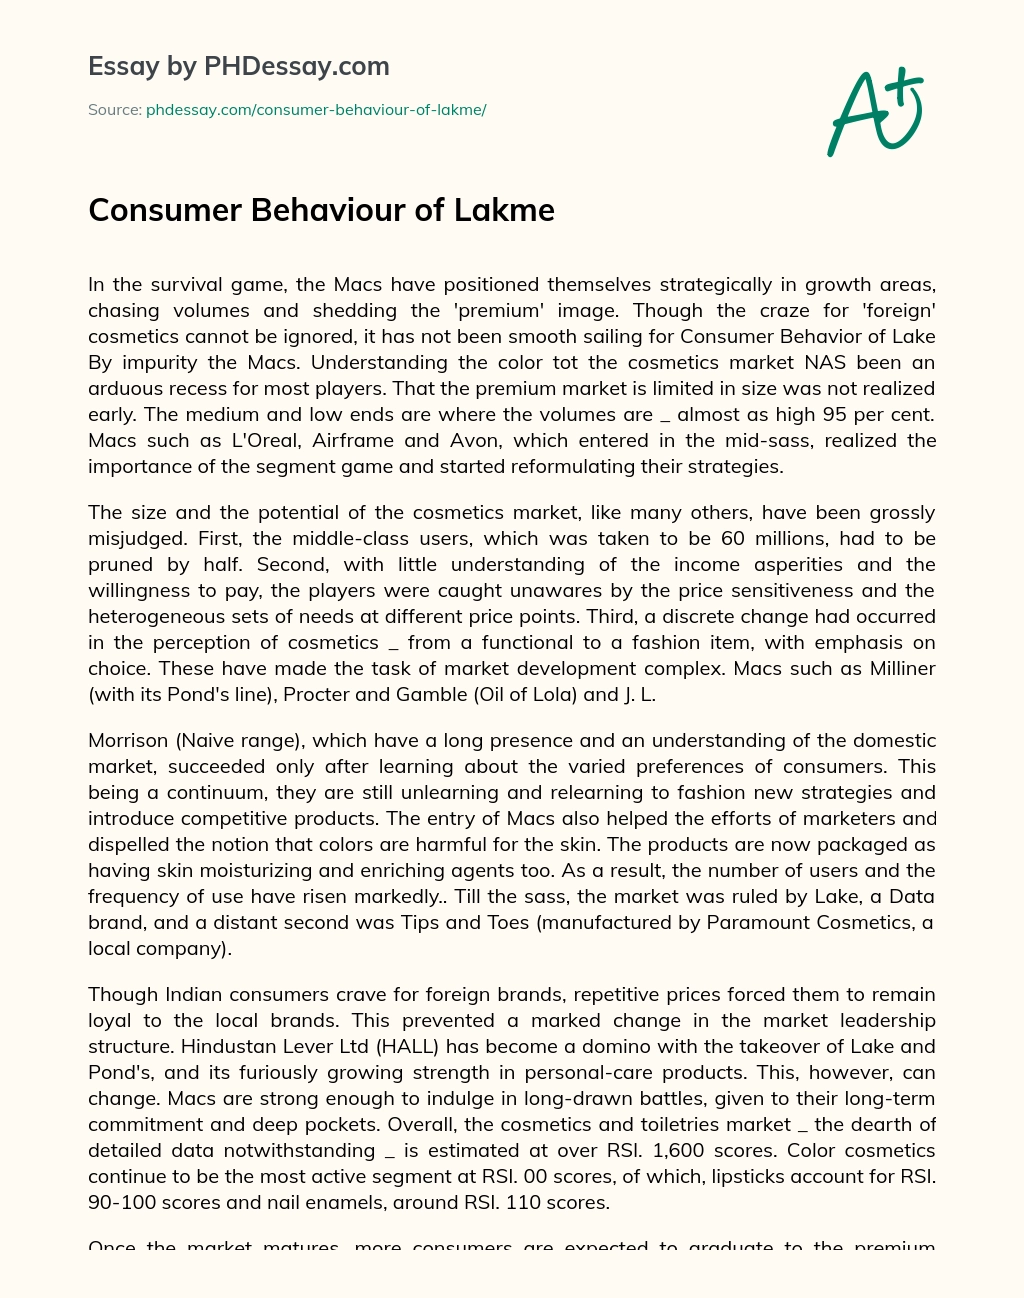 Consumer Behaviour of Lakme essay